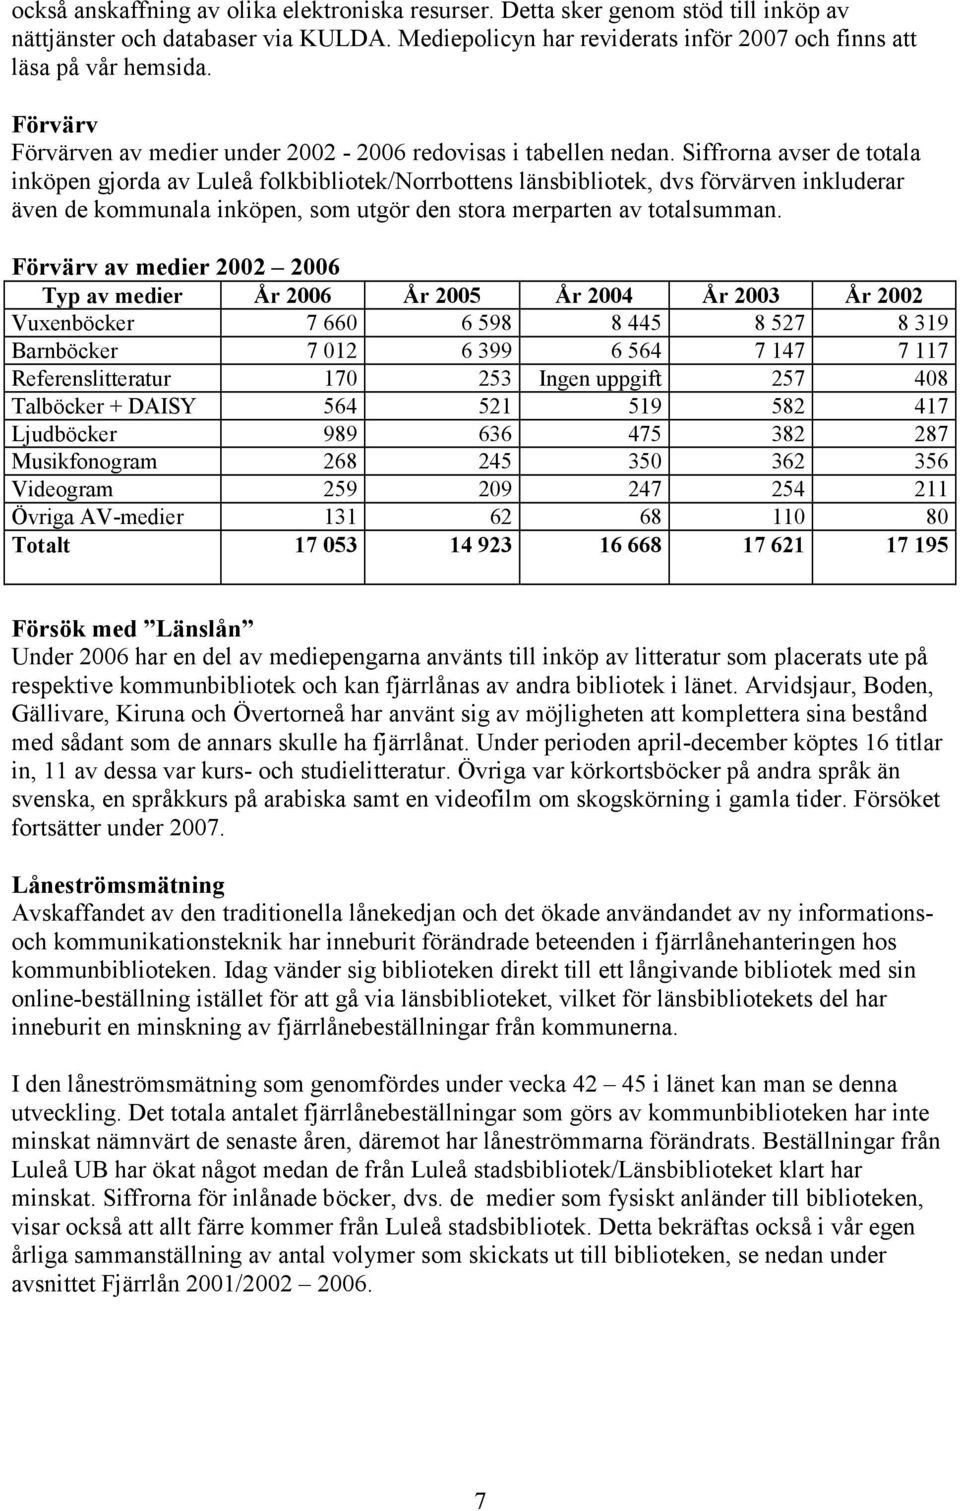 Siffrorna avser de totala inköpen gjorda av Luleå folkbibliotek/norrbottens länsbibliotek, dvs förvärven inkluderar även de kommunala inköpen, som utgör den stora merparten av totalsumman.